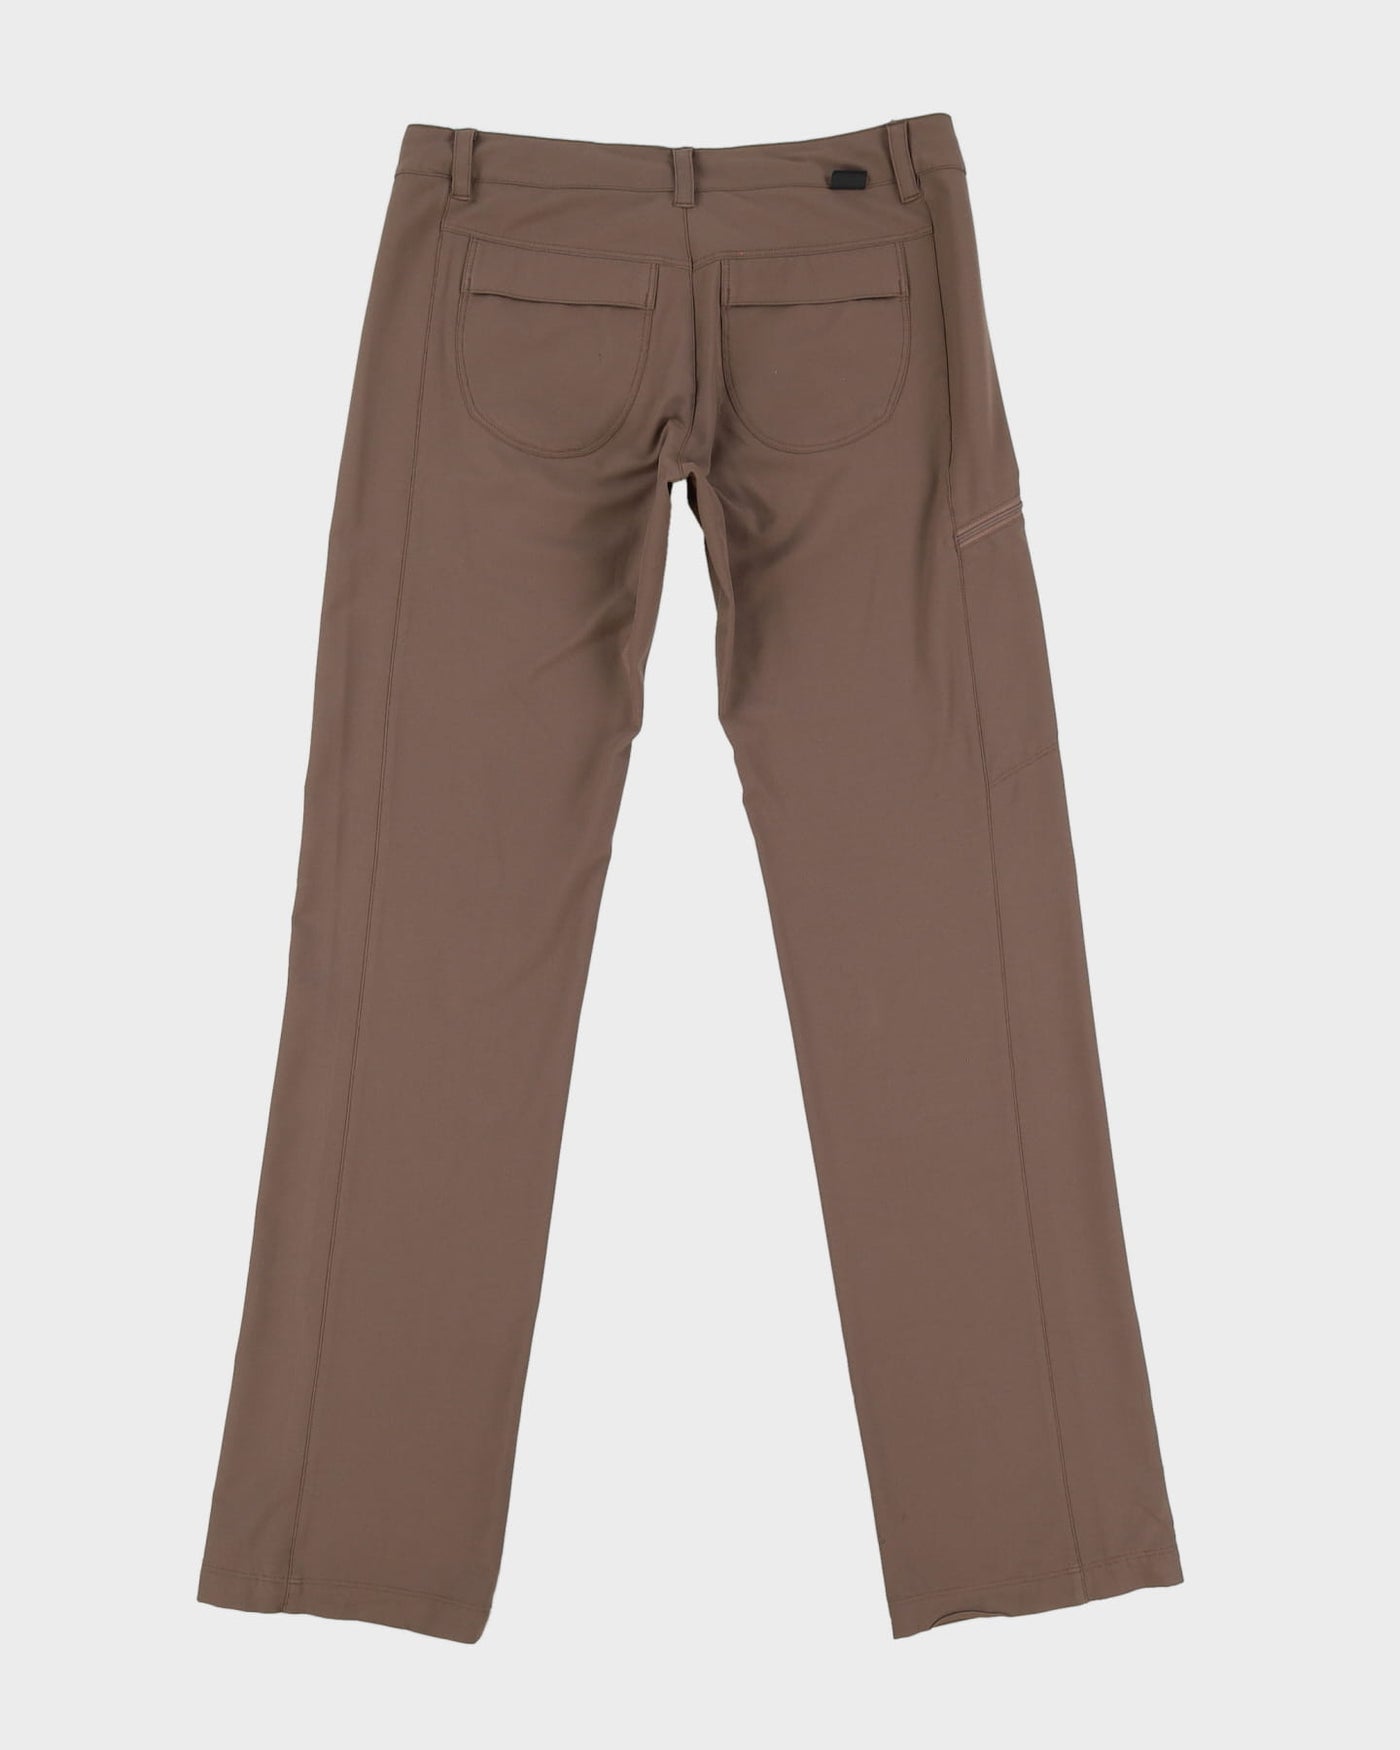 Patagonia Brown Tech Utility Trousers - W34 L33